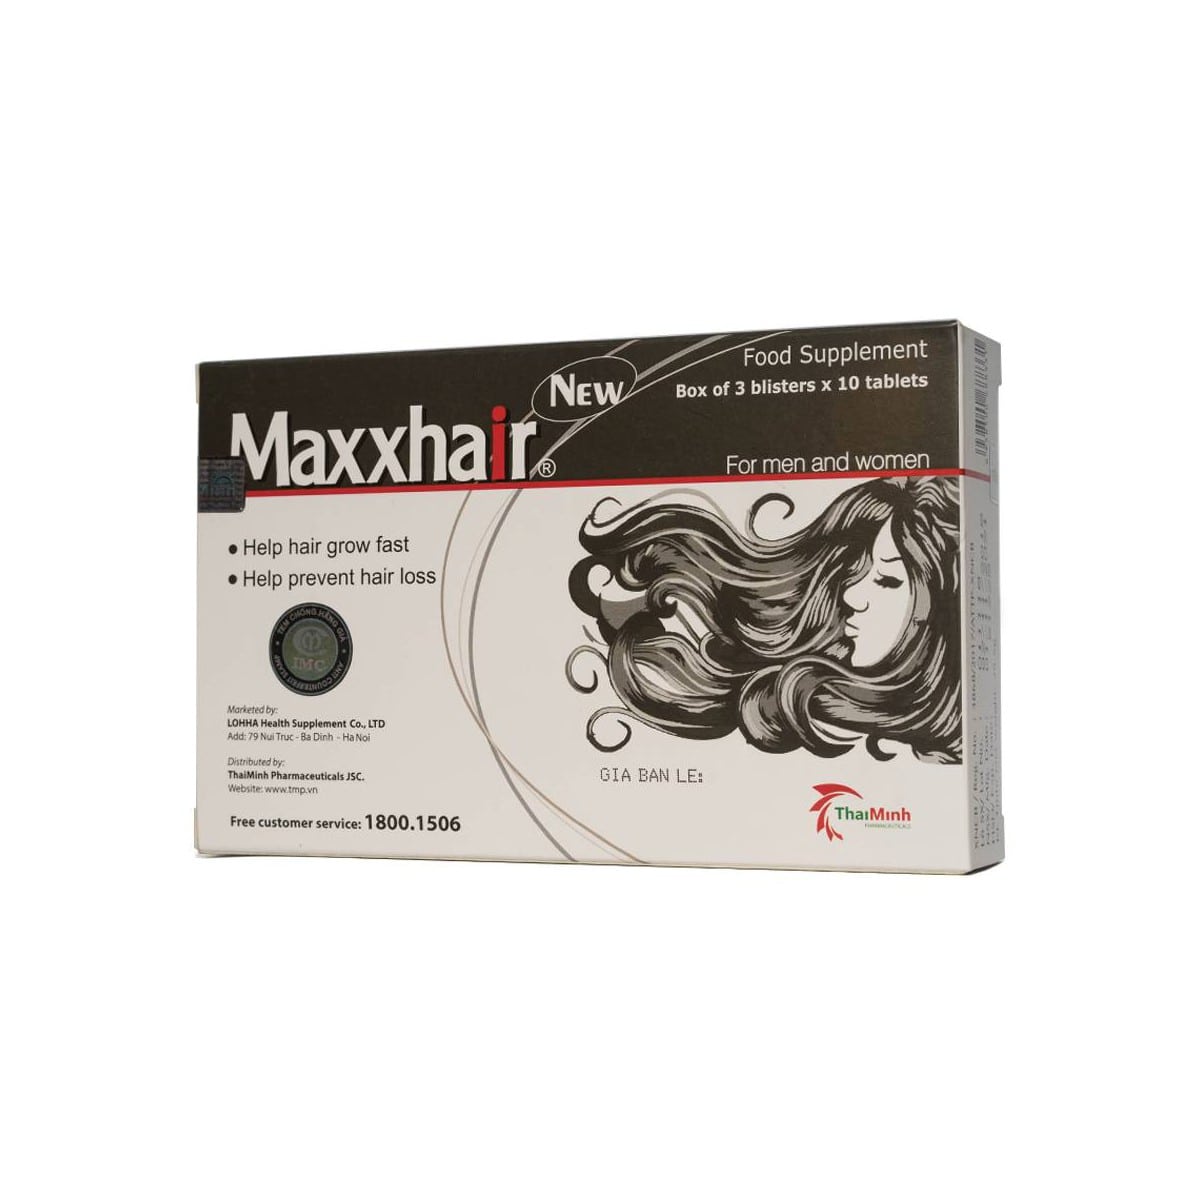 Thực phẩm bảo vệ sức khỏe Maxxhair New hộp 30 viên- Bổ sung Vitamin và khoáng chất giúp tăng cường sức khỏe của tóc; giúp tóc mọc nhanh, chắc khỏe, suôn mượt và bóng đẹp, ngăn ngừa rụng tóc, đồng thời giúp thải độc do ảnh hưởng của các hóa chất sử dụng ch